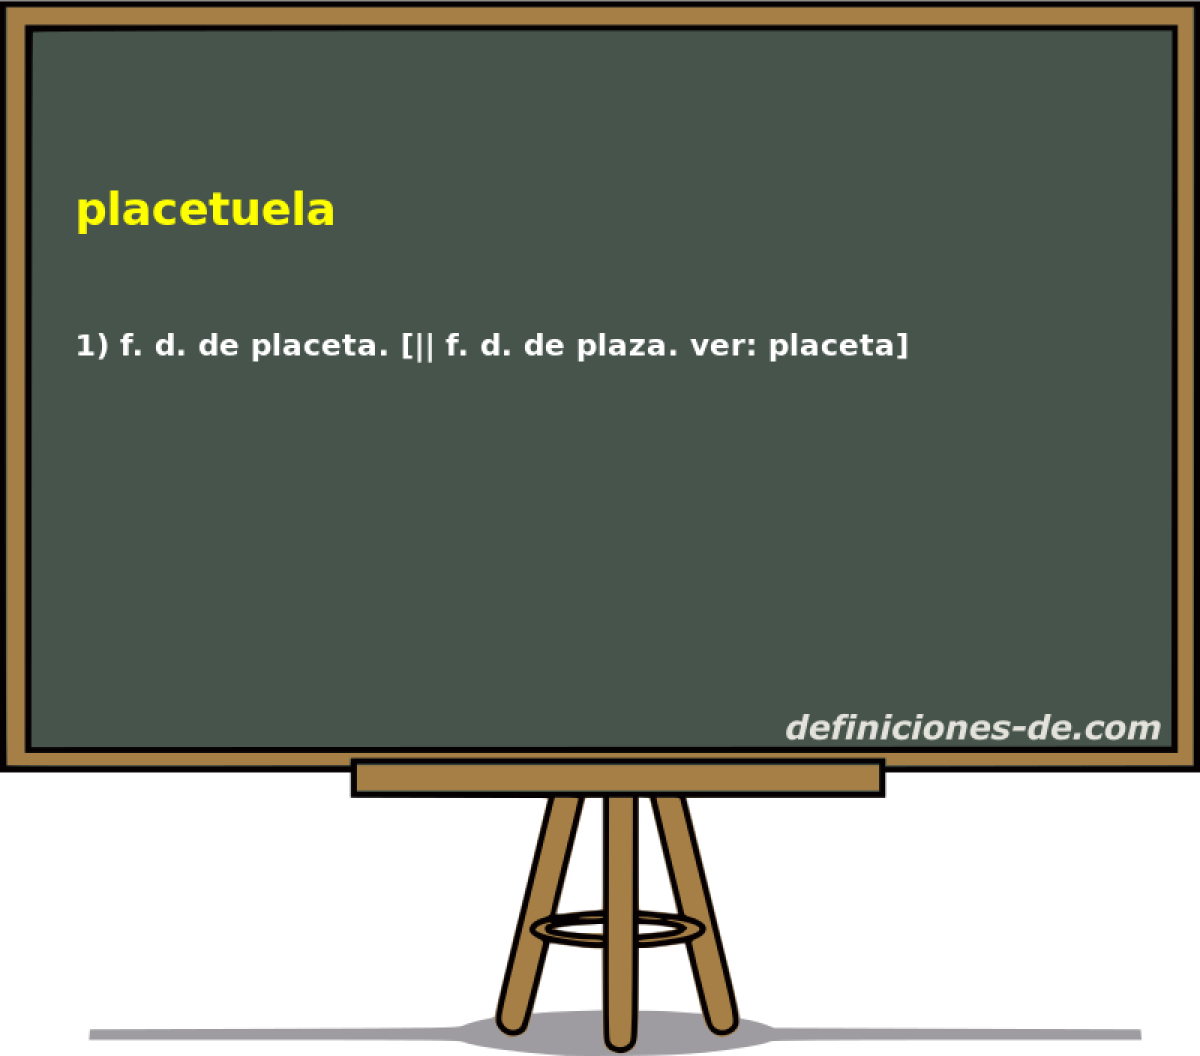 placetuela 